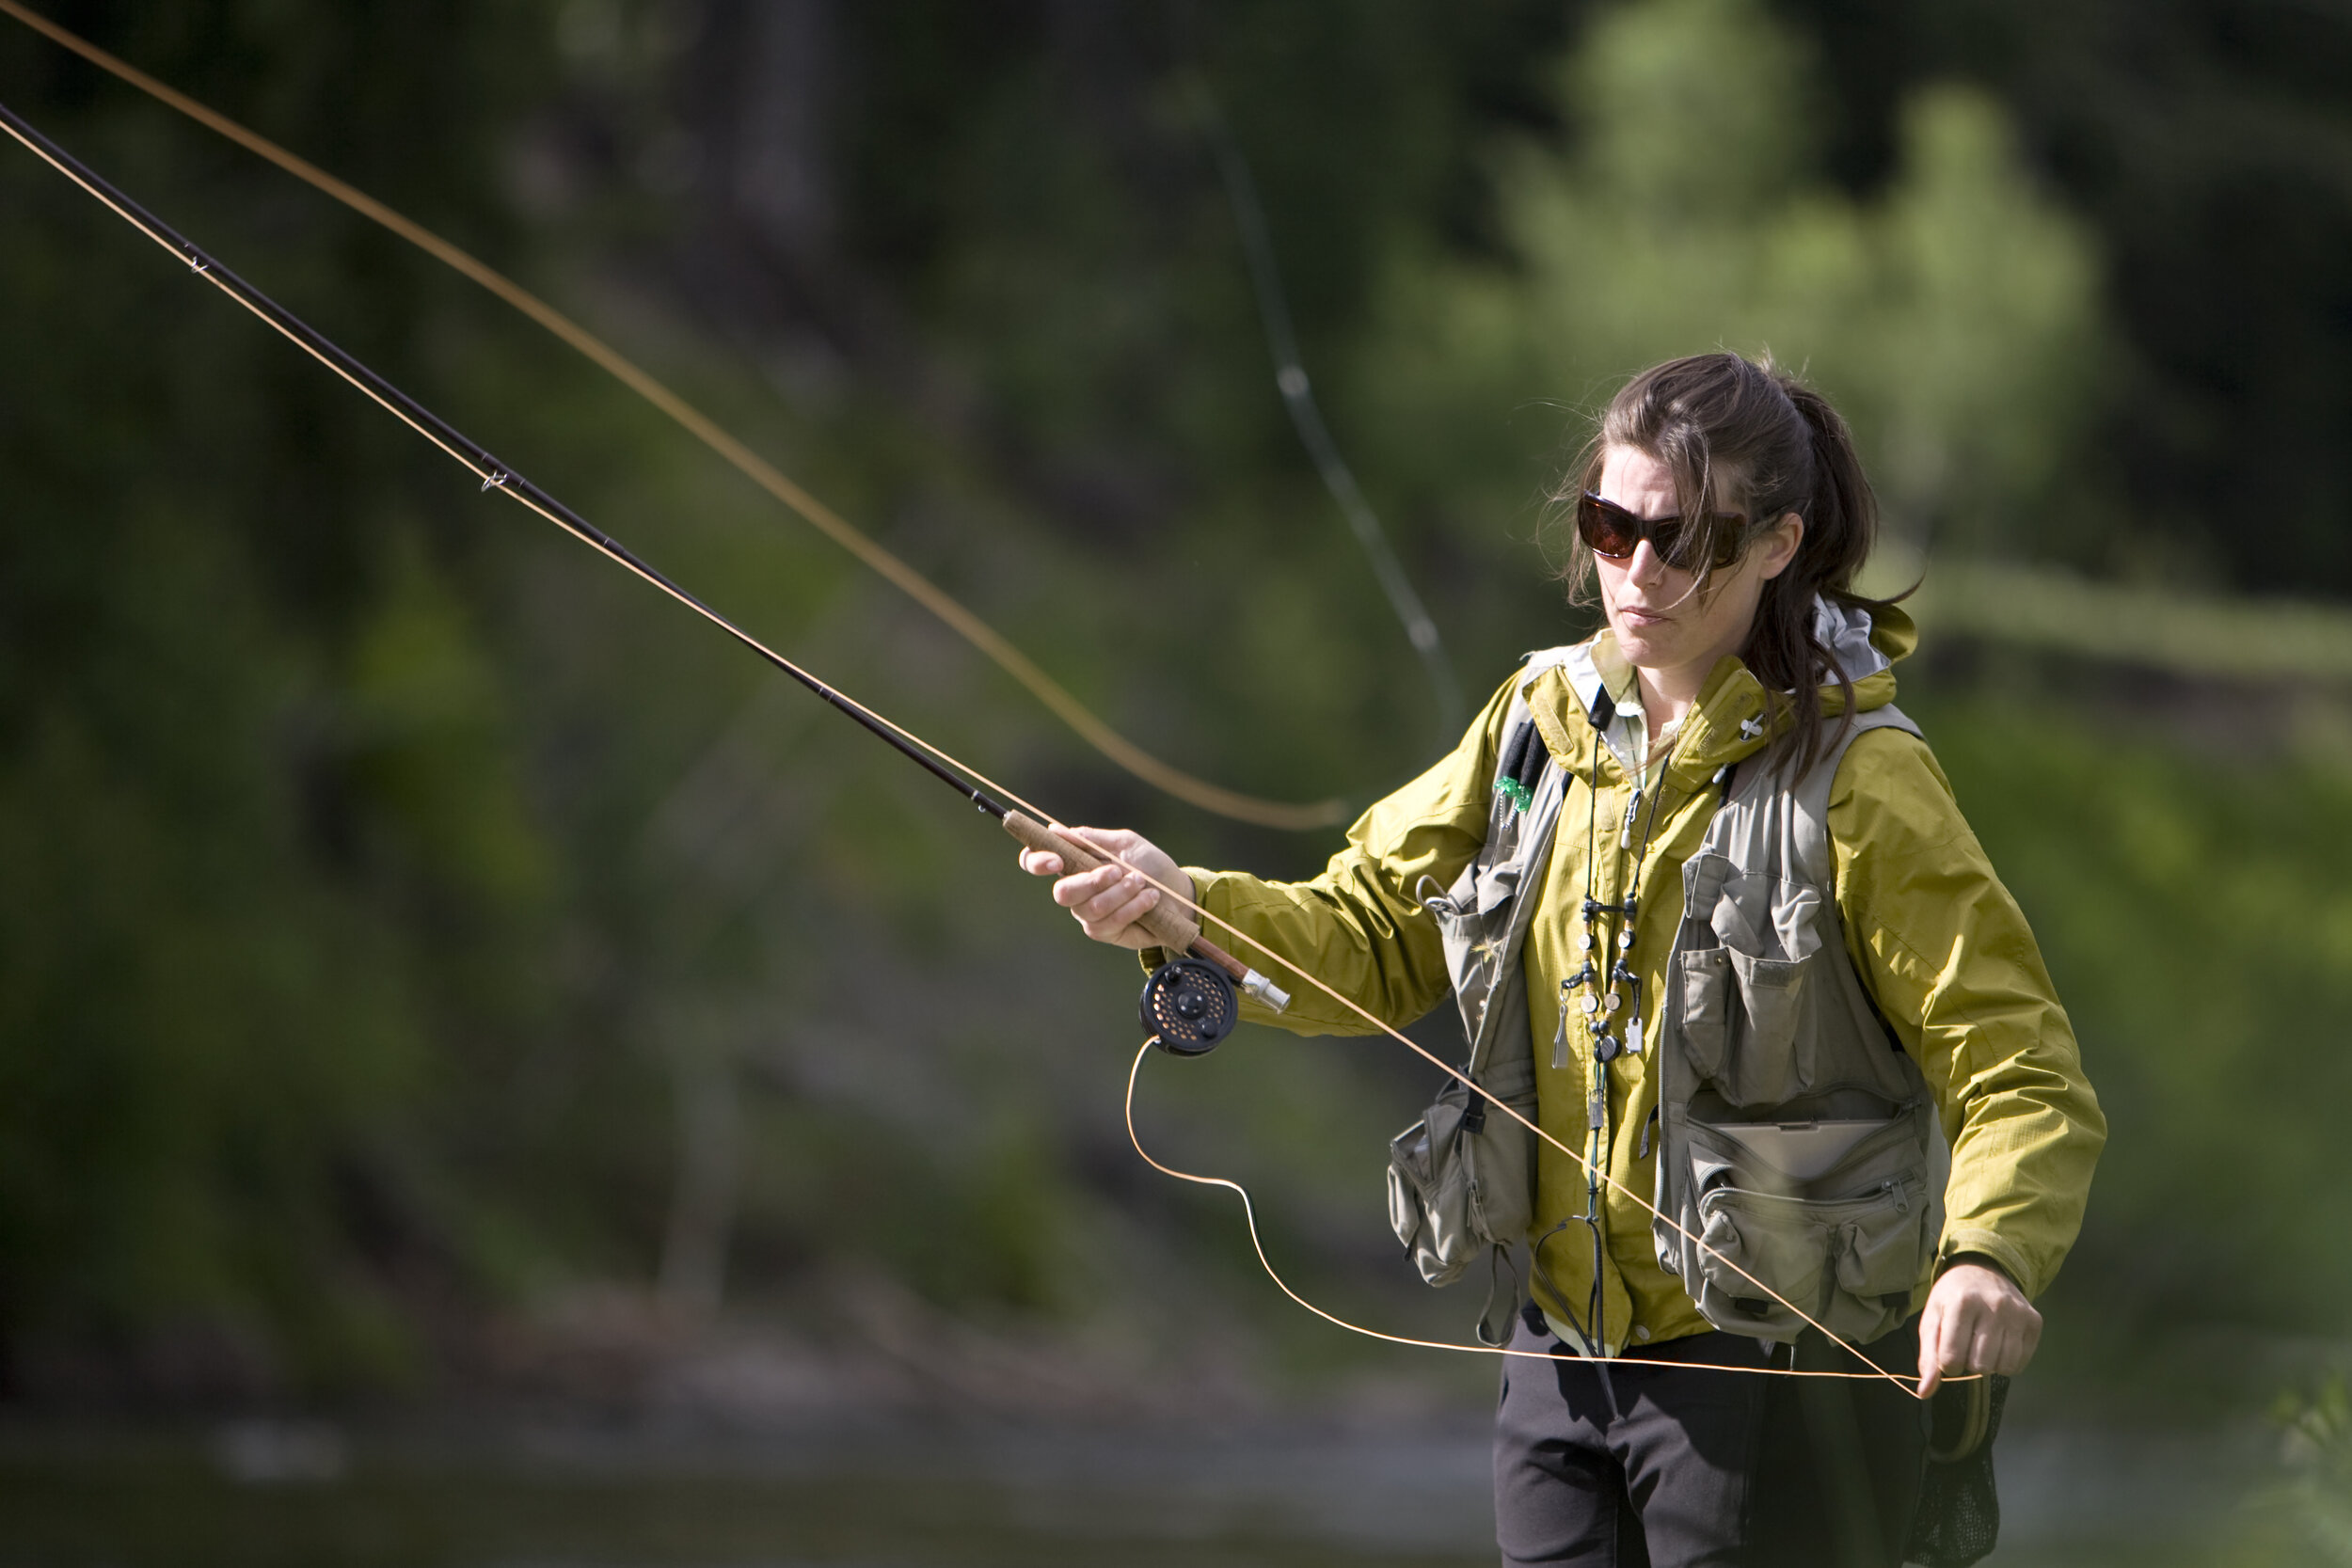 woman fishing